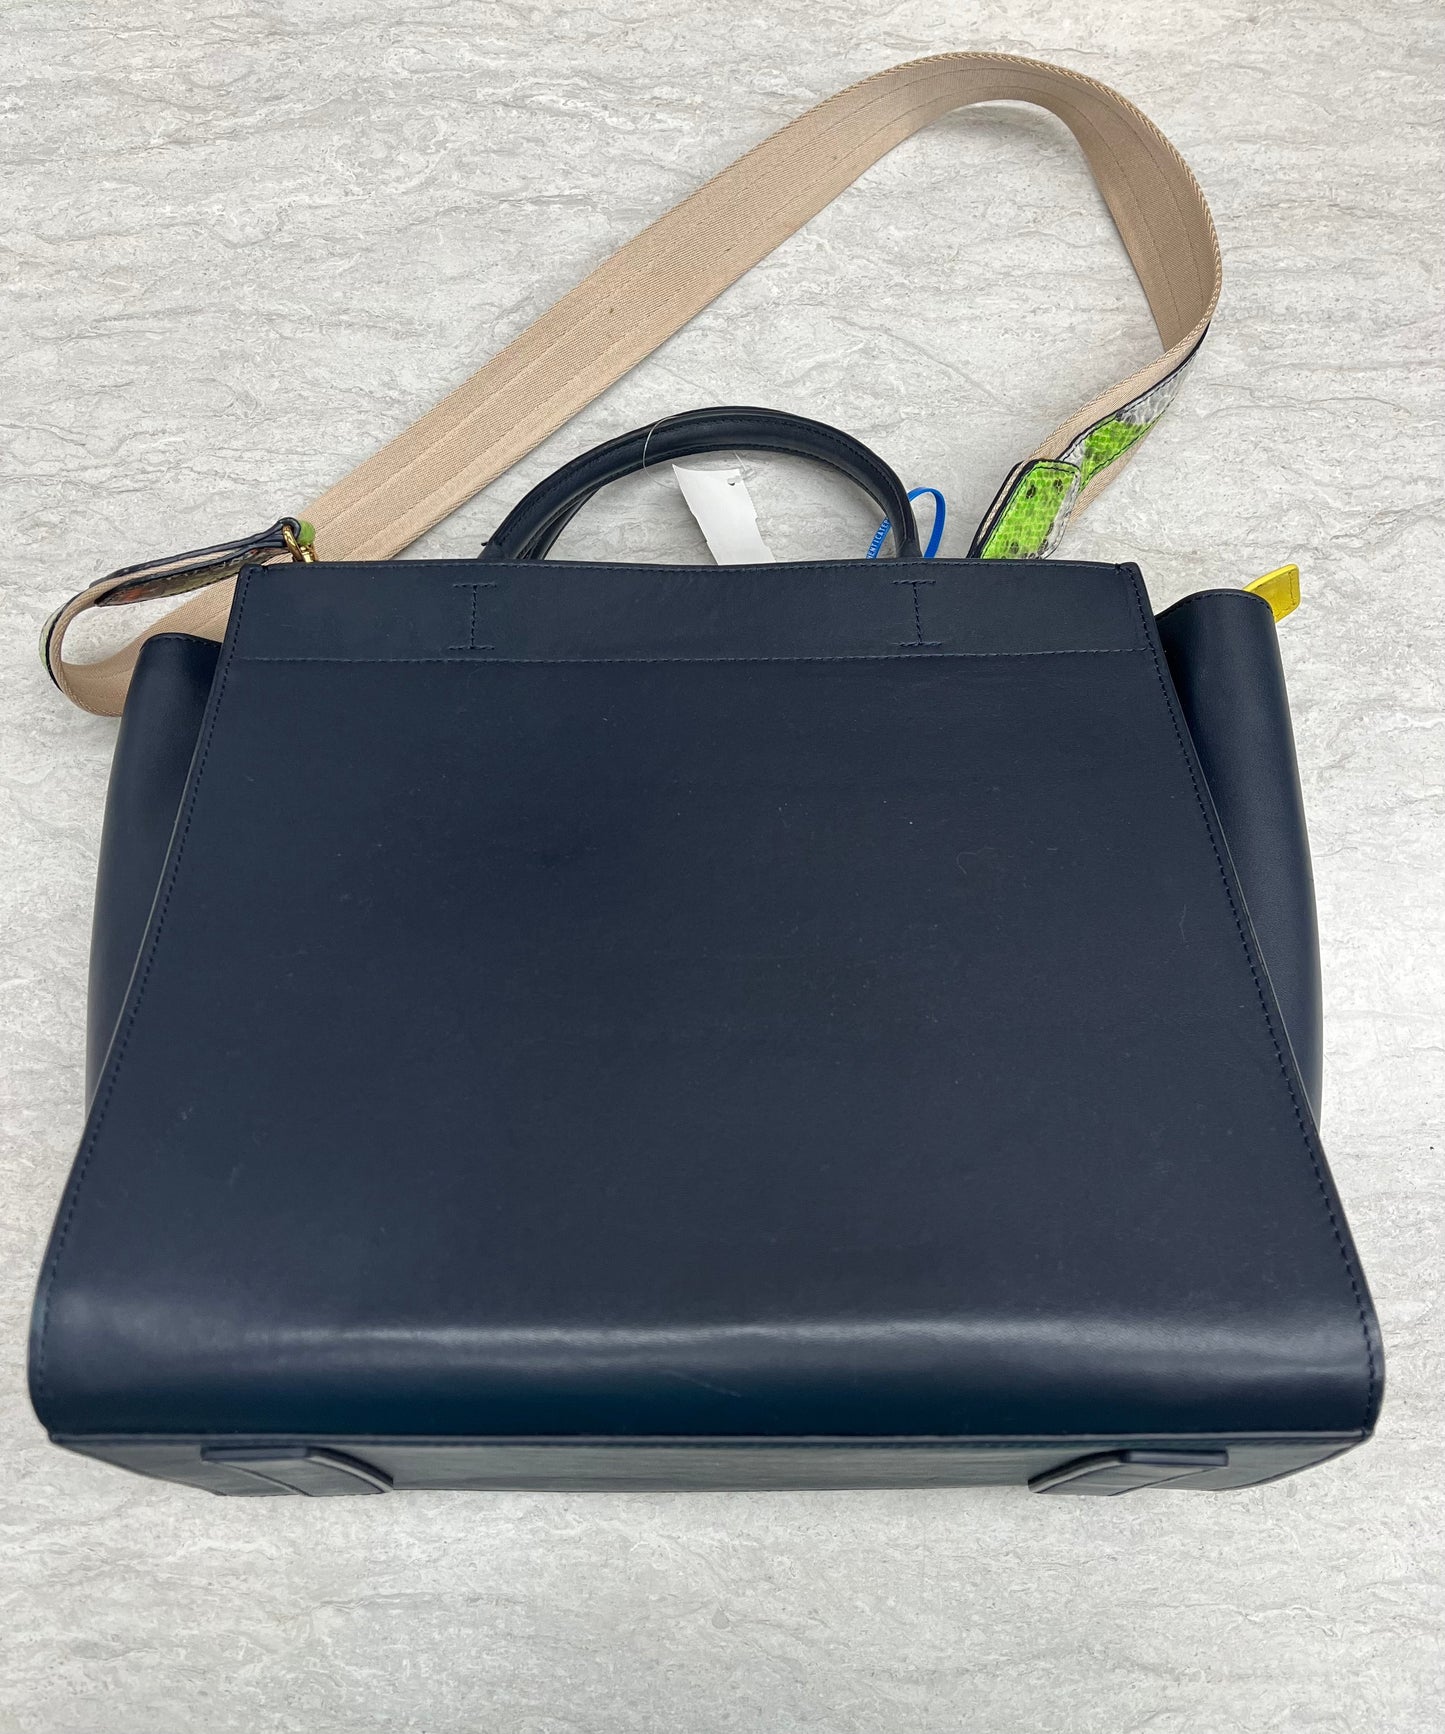 Handbag Luxury Designer Mcm, Size Large